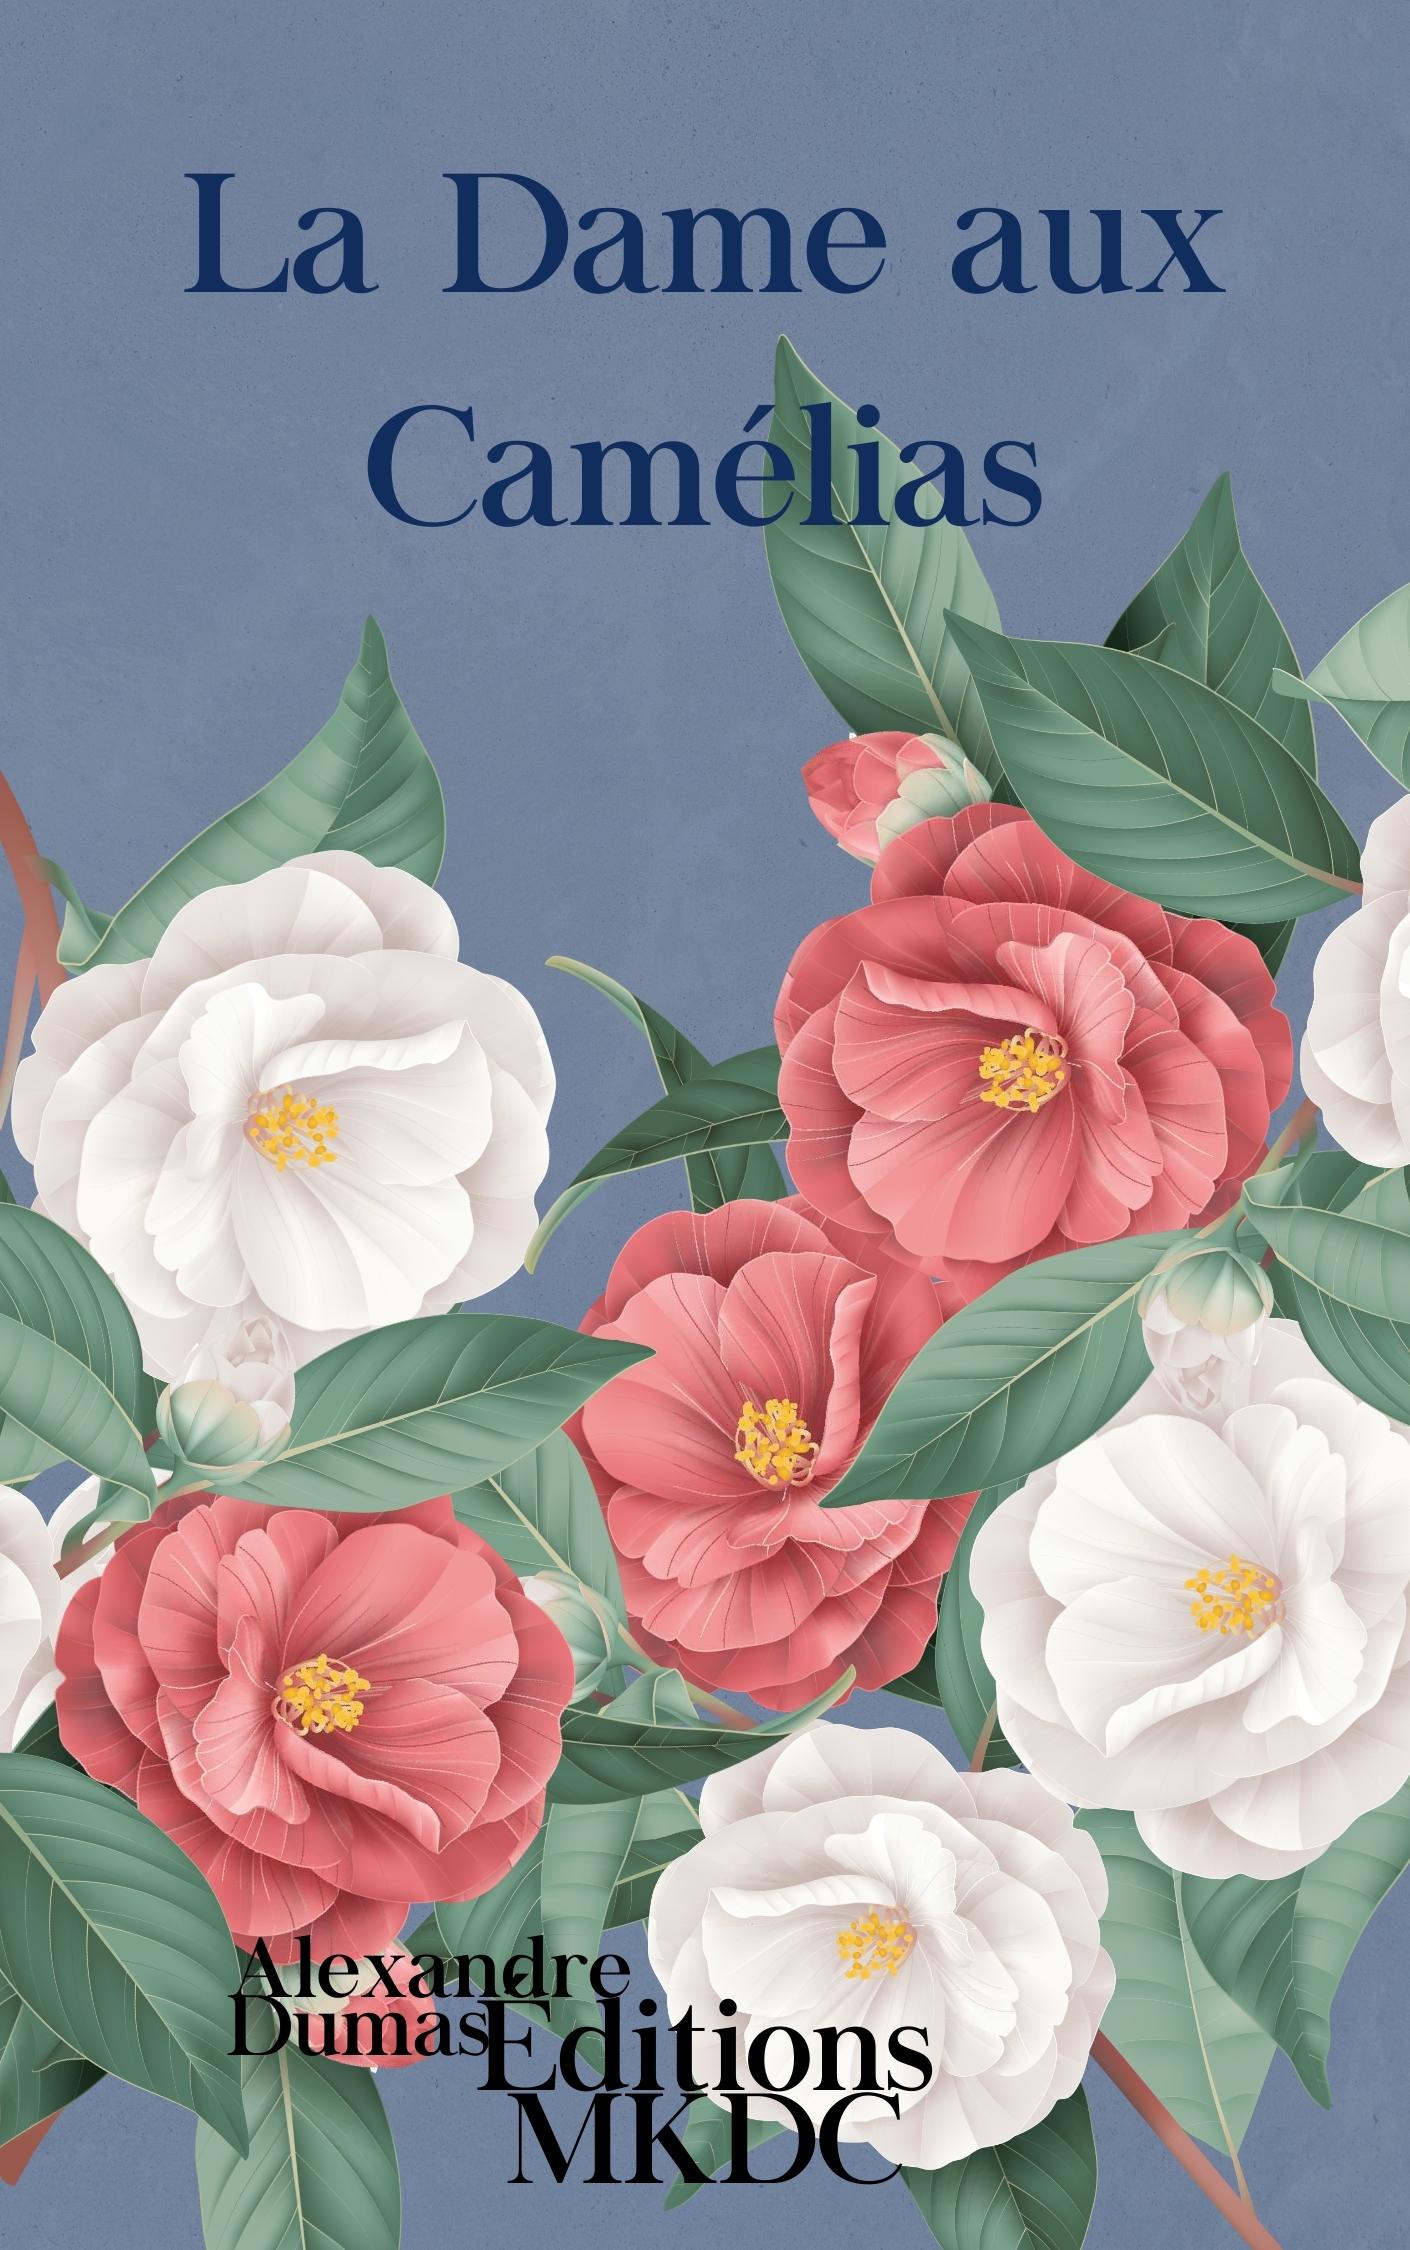 Couverture du livre "La Dame aux Camélias"